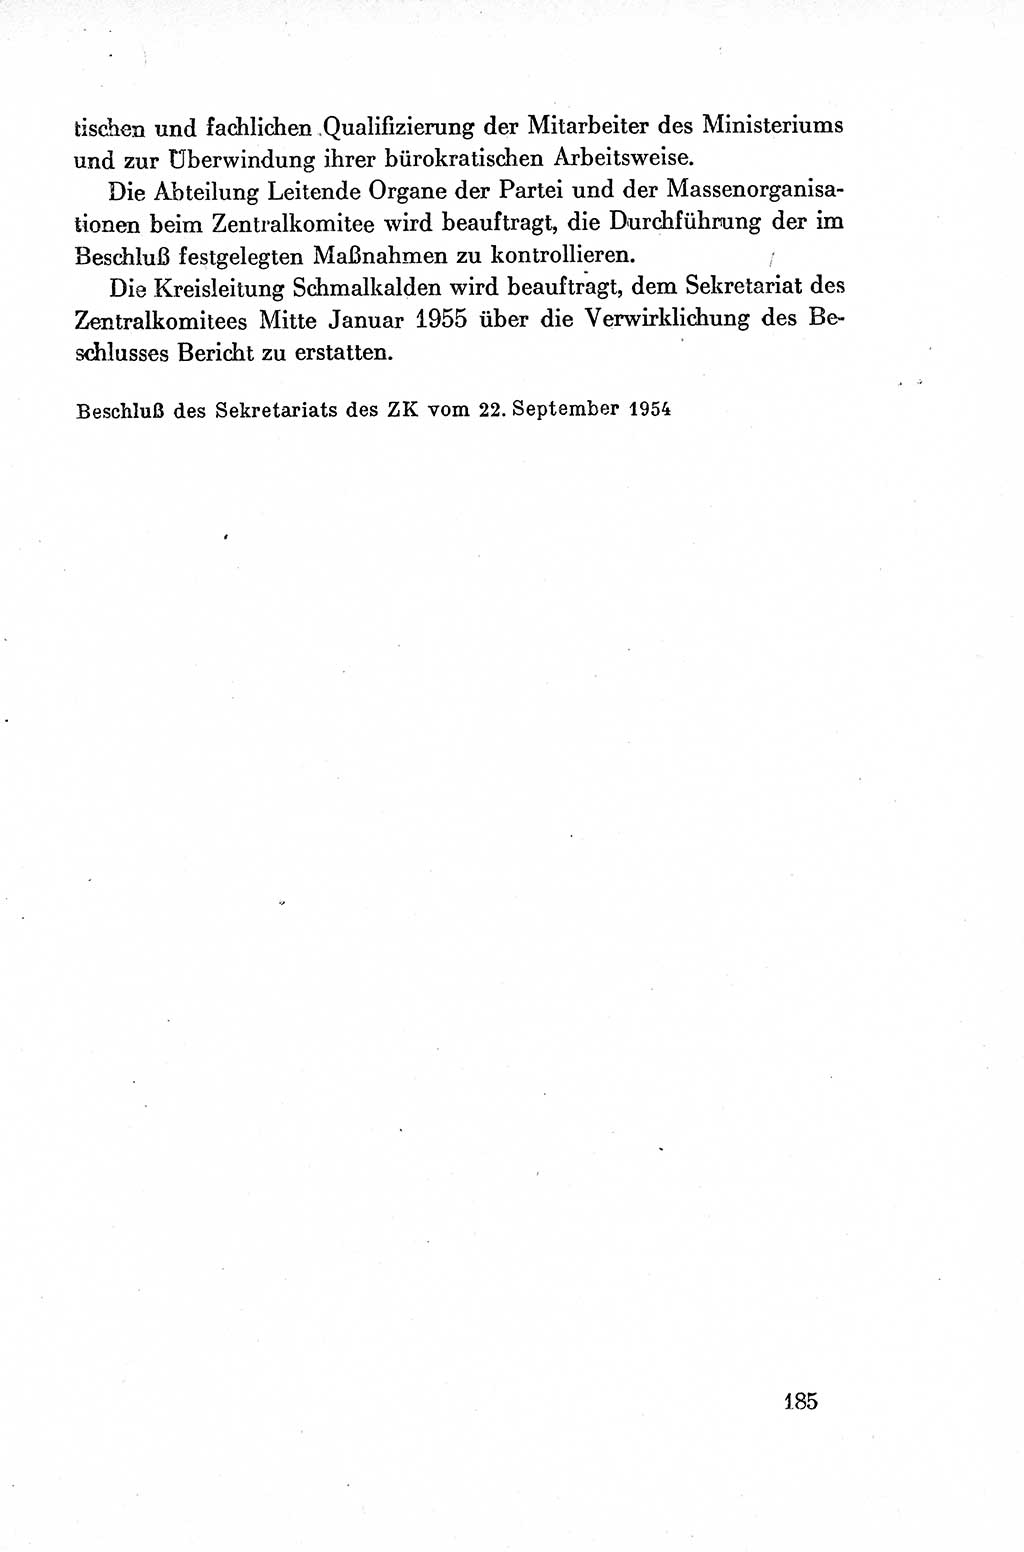 Dokumente der Sozialistischen Einheitspartei Deutschlands (SED) [Deutsche Demokratische Republik (DDR)] 1954-1955, Seite 185 (Dok. SED DDR 1954-1955, S. 185)